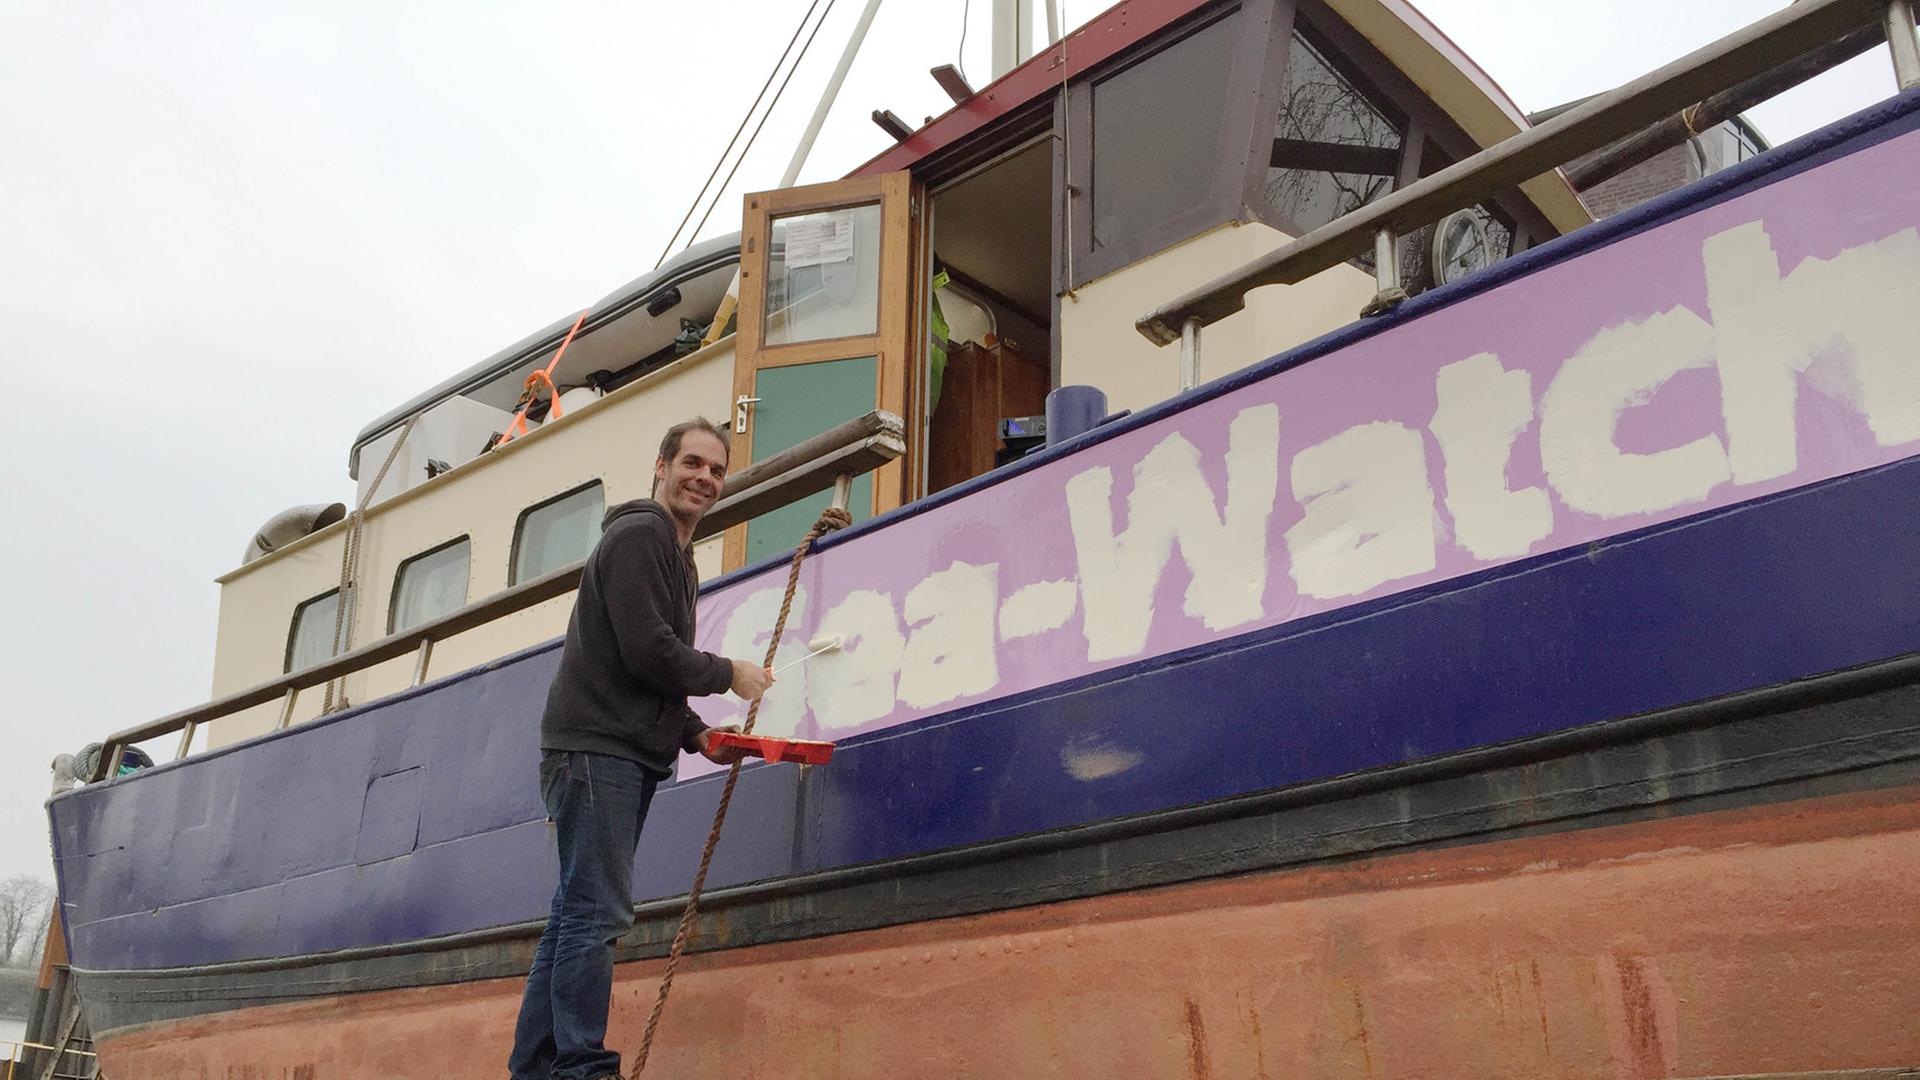 Harald Höppner steht auf einem Holzbrett vor einem Schiff, mit Malerutensilien in der Hand, auf dem Schiff steht "Sea-Watch" geschrieben.